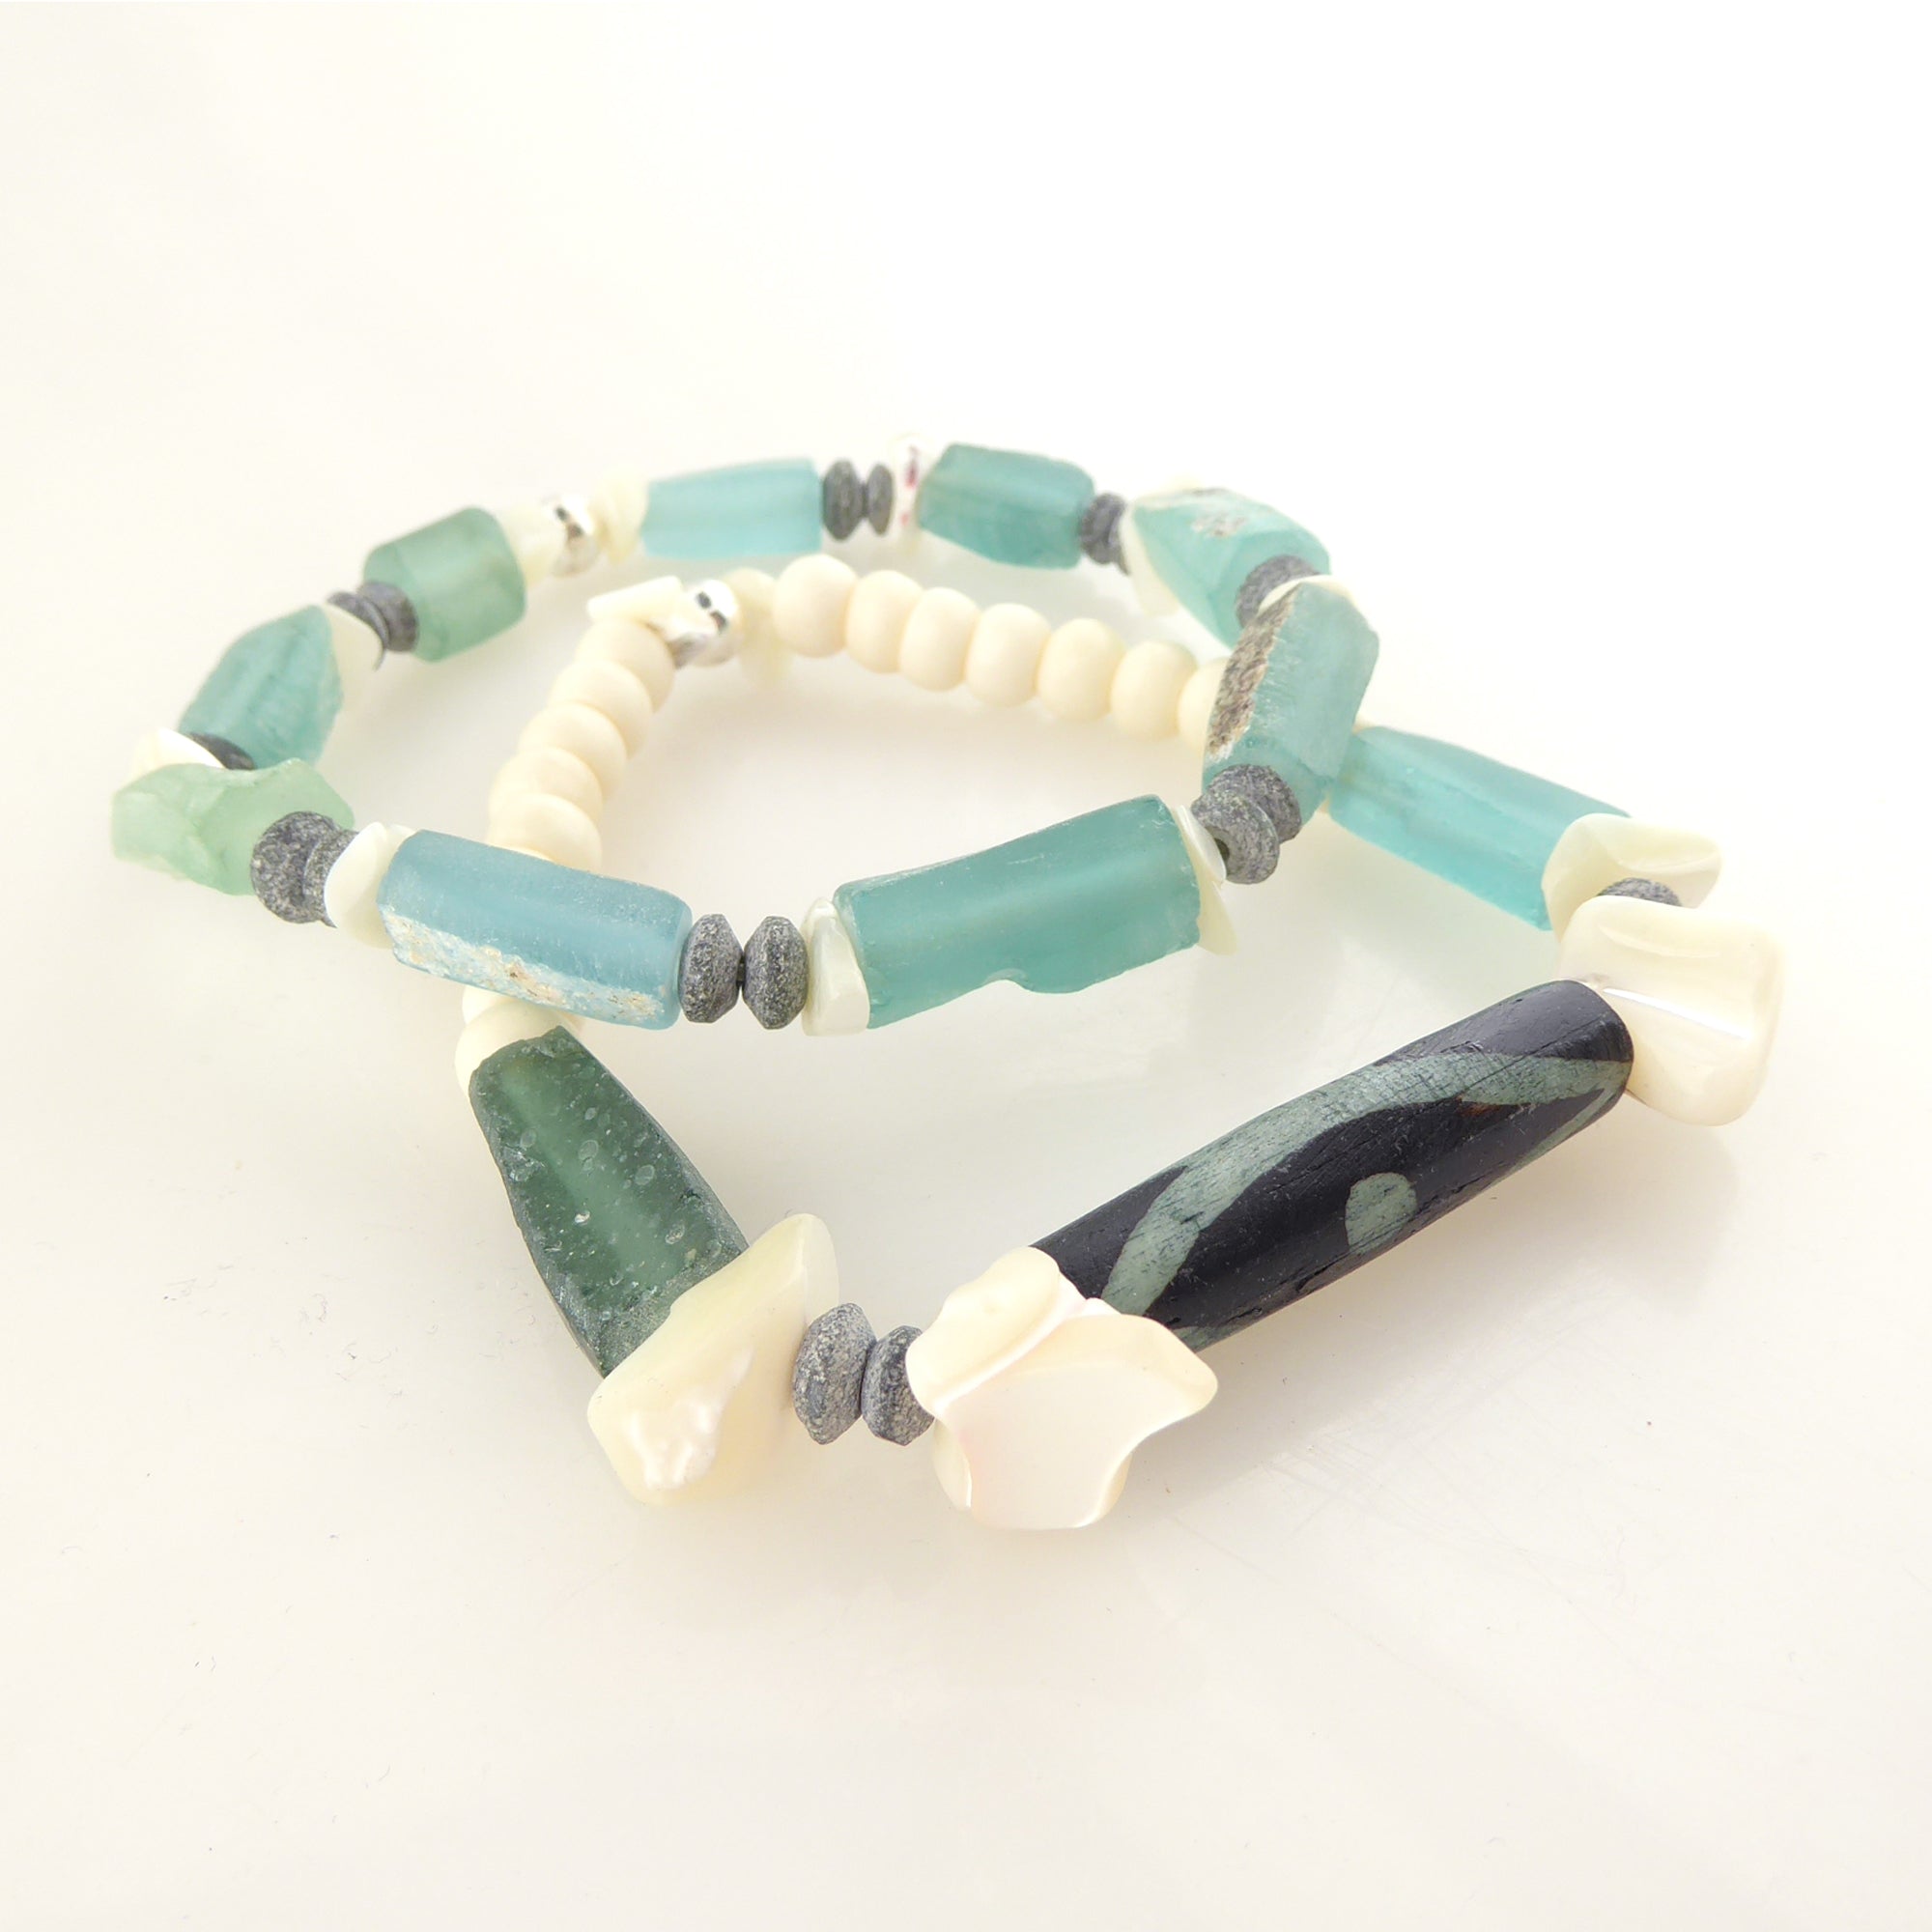 Antique roman glass bracelet by Jenny Dayco 2